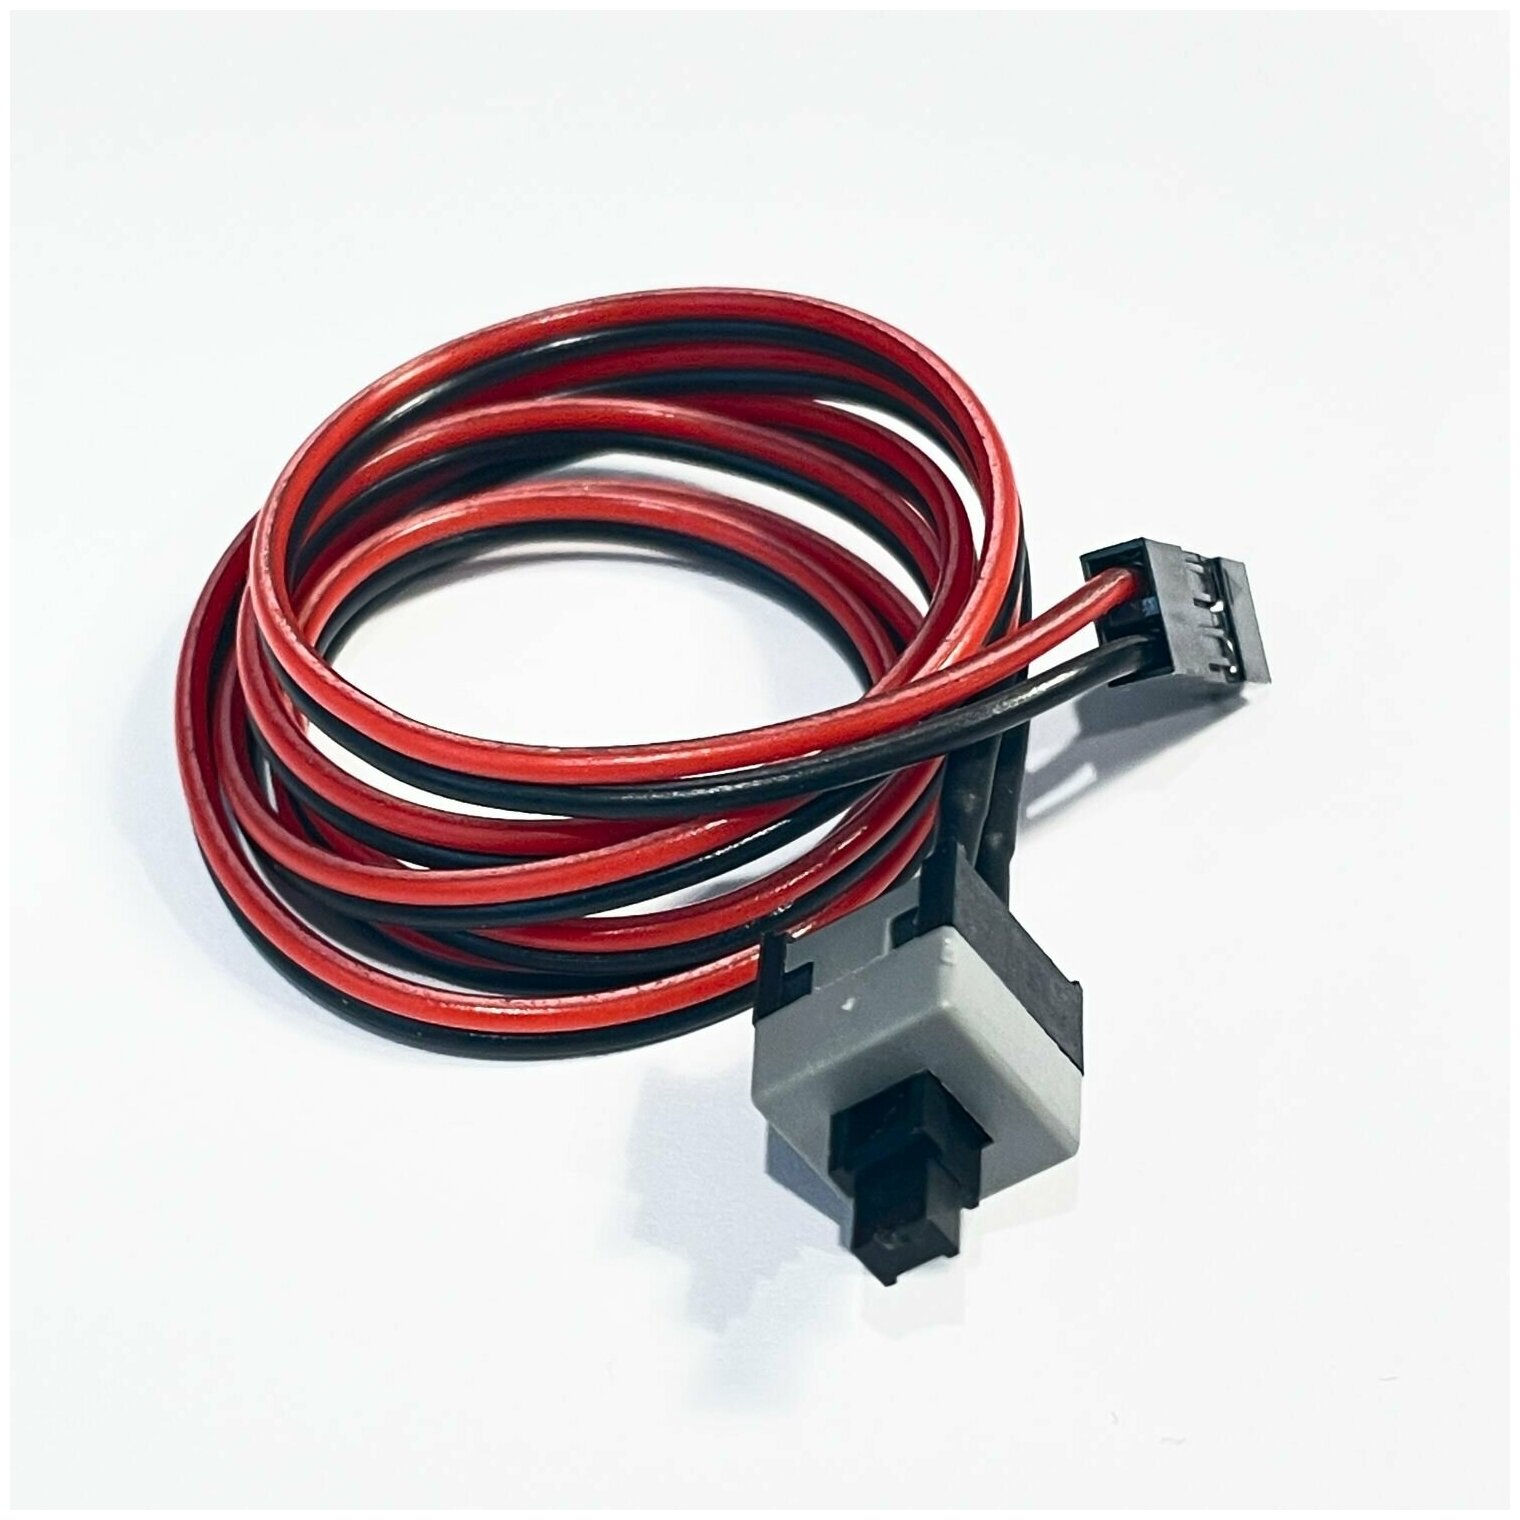 Кнопка включения питания ПК / power (резет пуск вкл) кабель 50 см